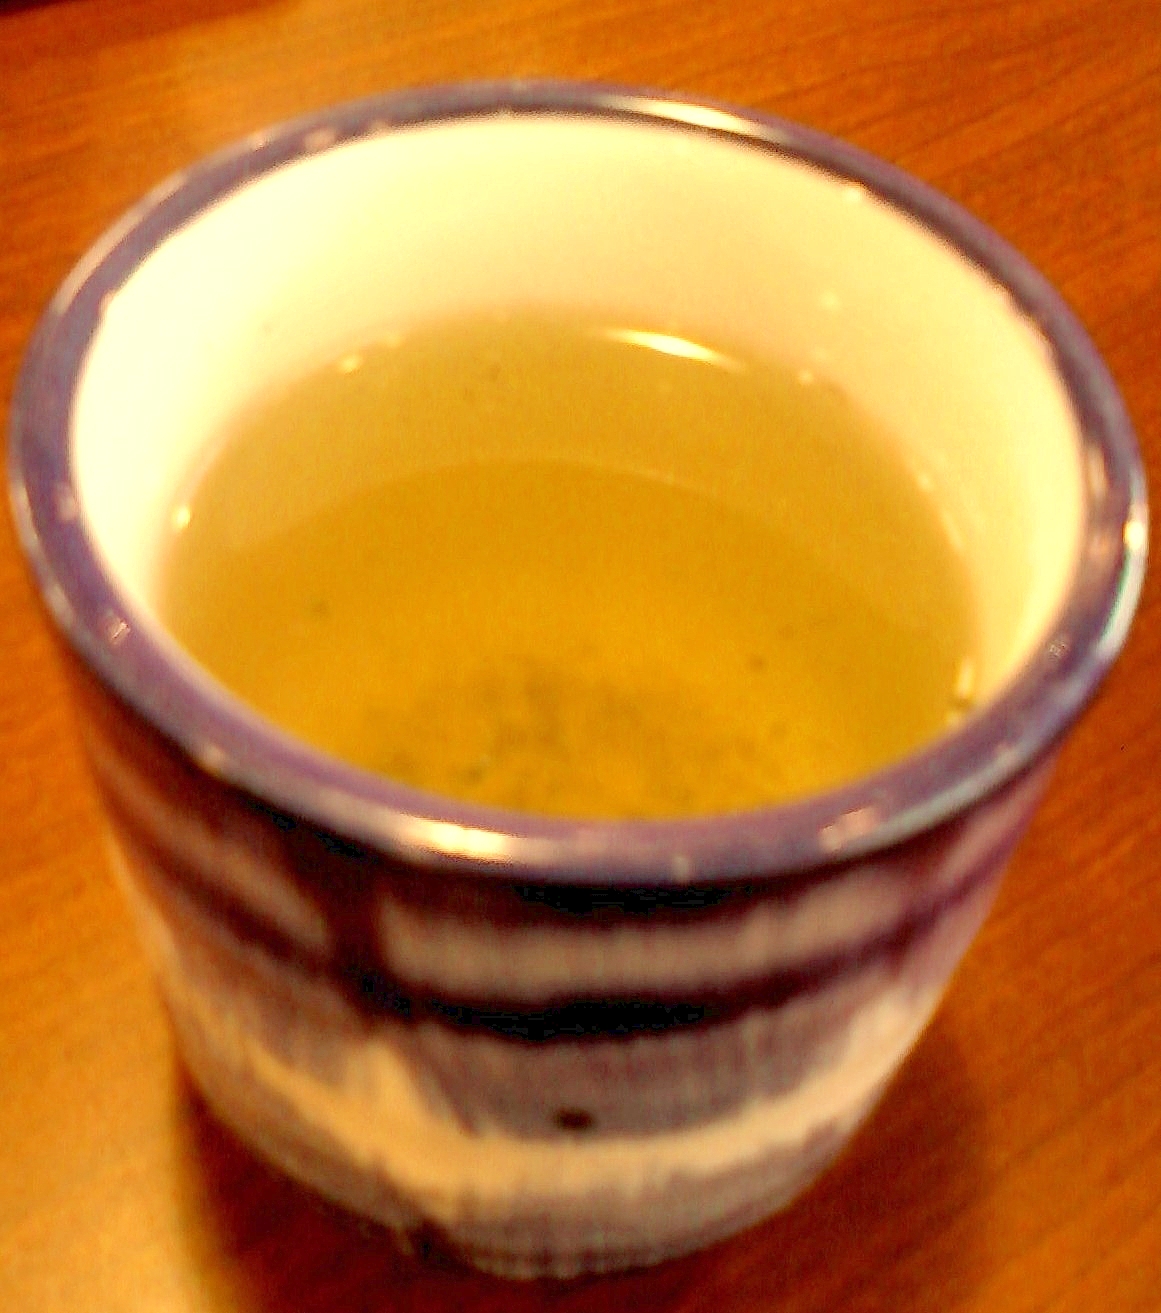 ☆*:・☆リンゴ果汁入りミント緑茶☆*:・☆